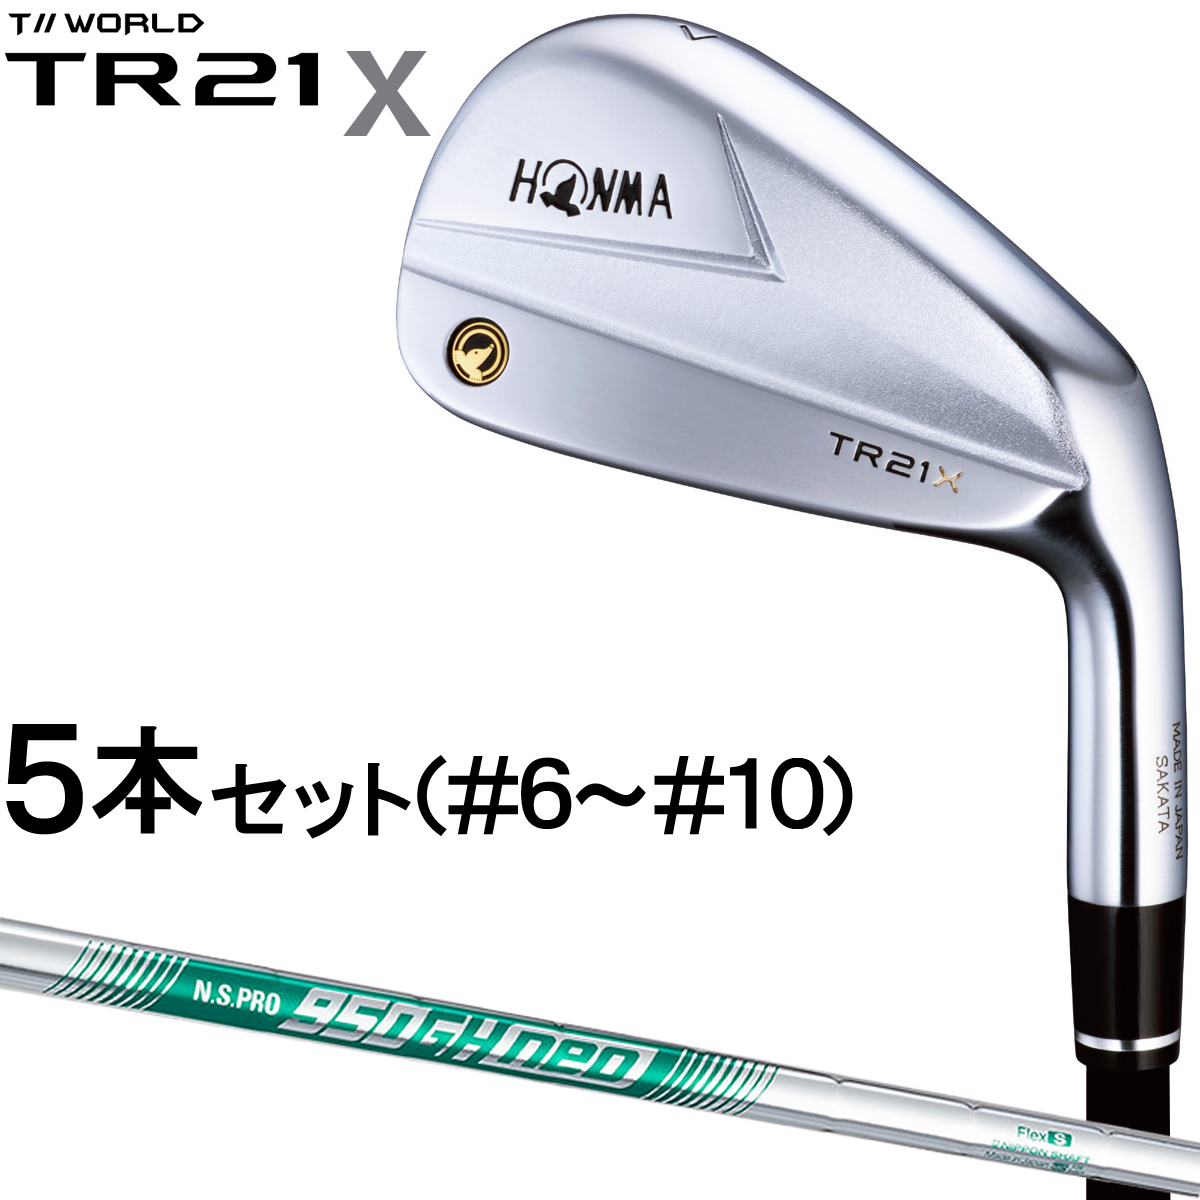 ホンマ TR21X 6〜10 5本セット 美品-